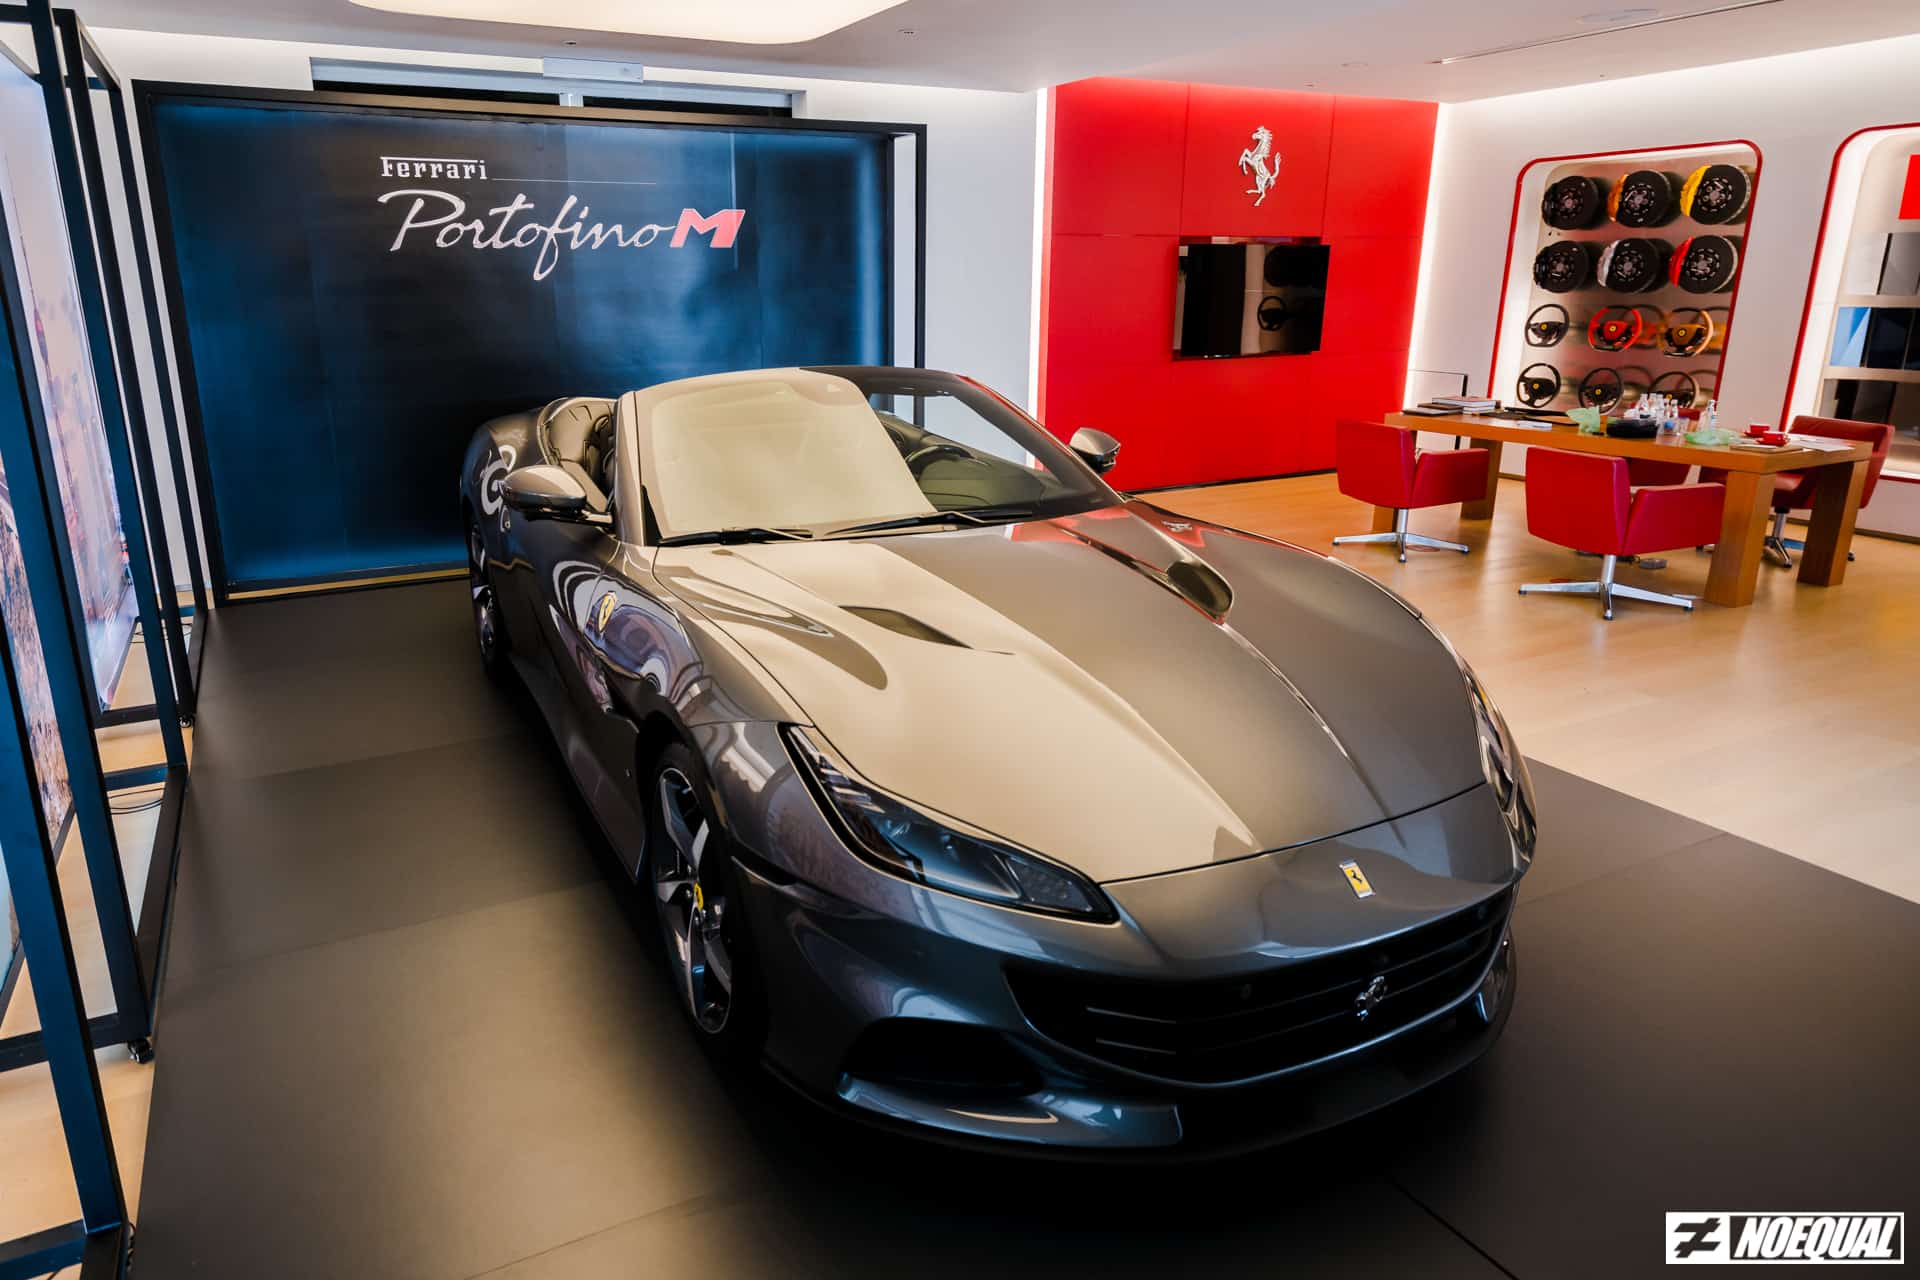 Ferrari's Riviera Droptop - Portofino M Debuts In M'sia!